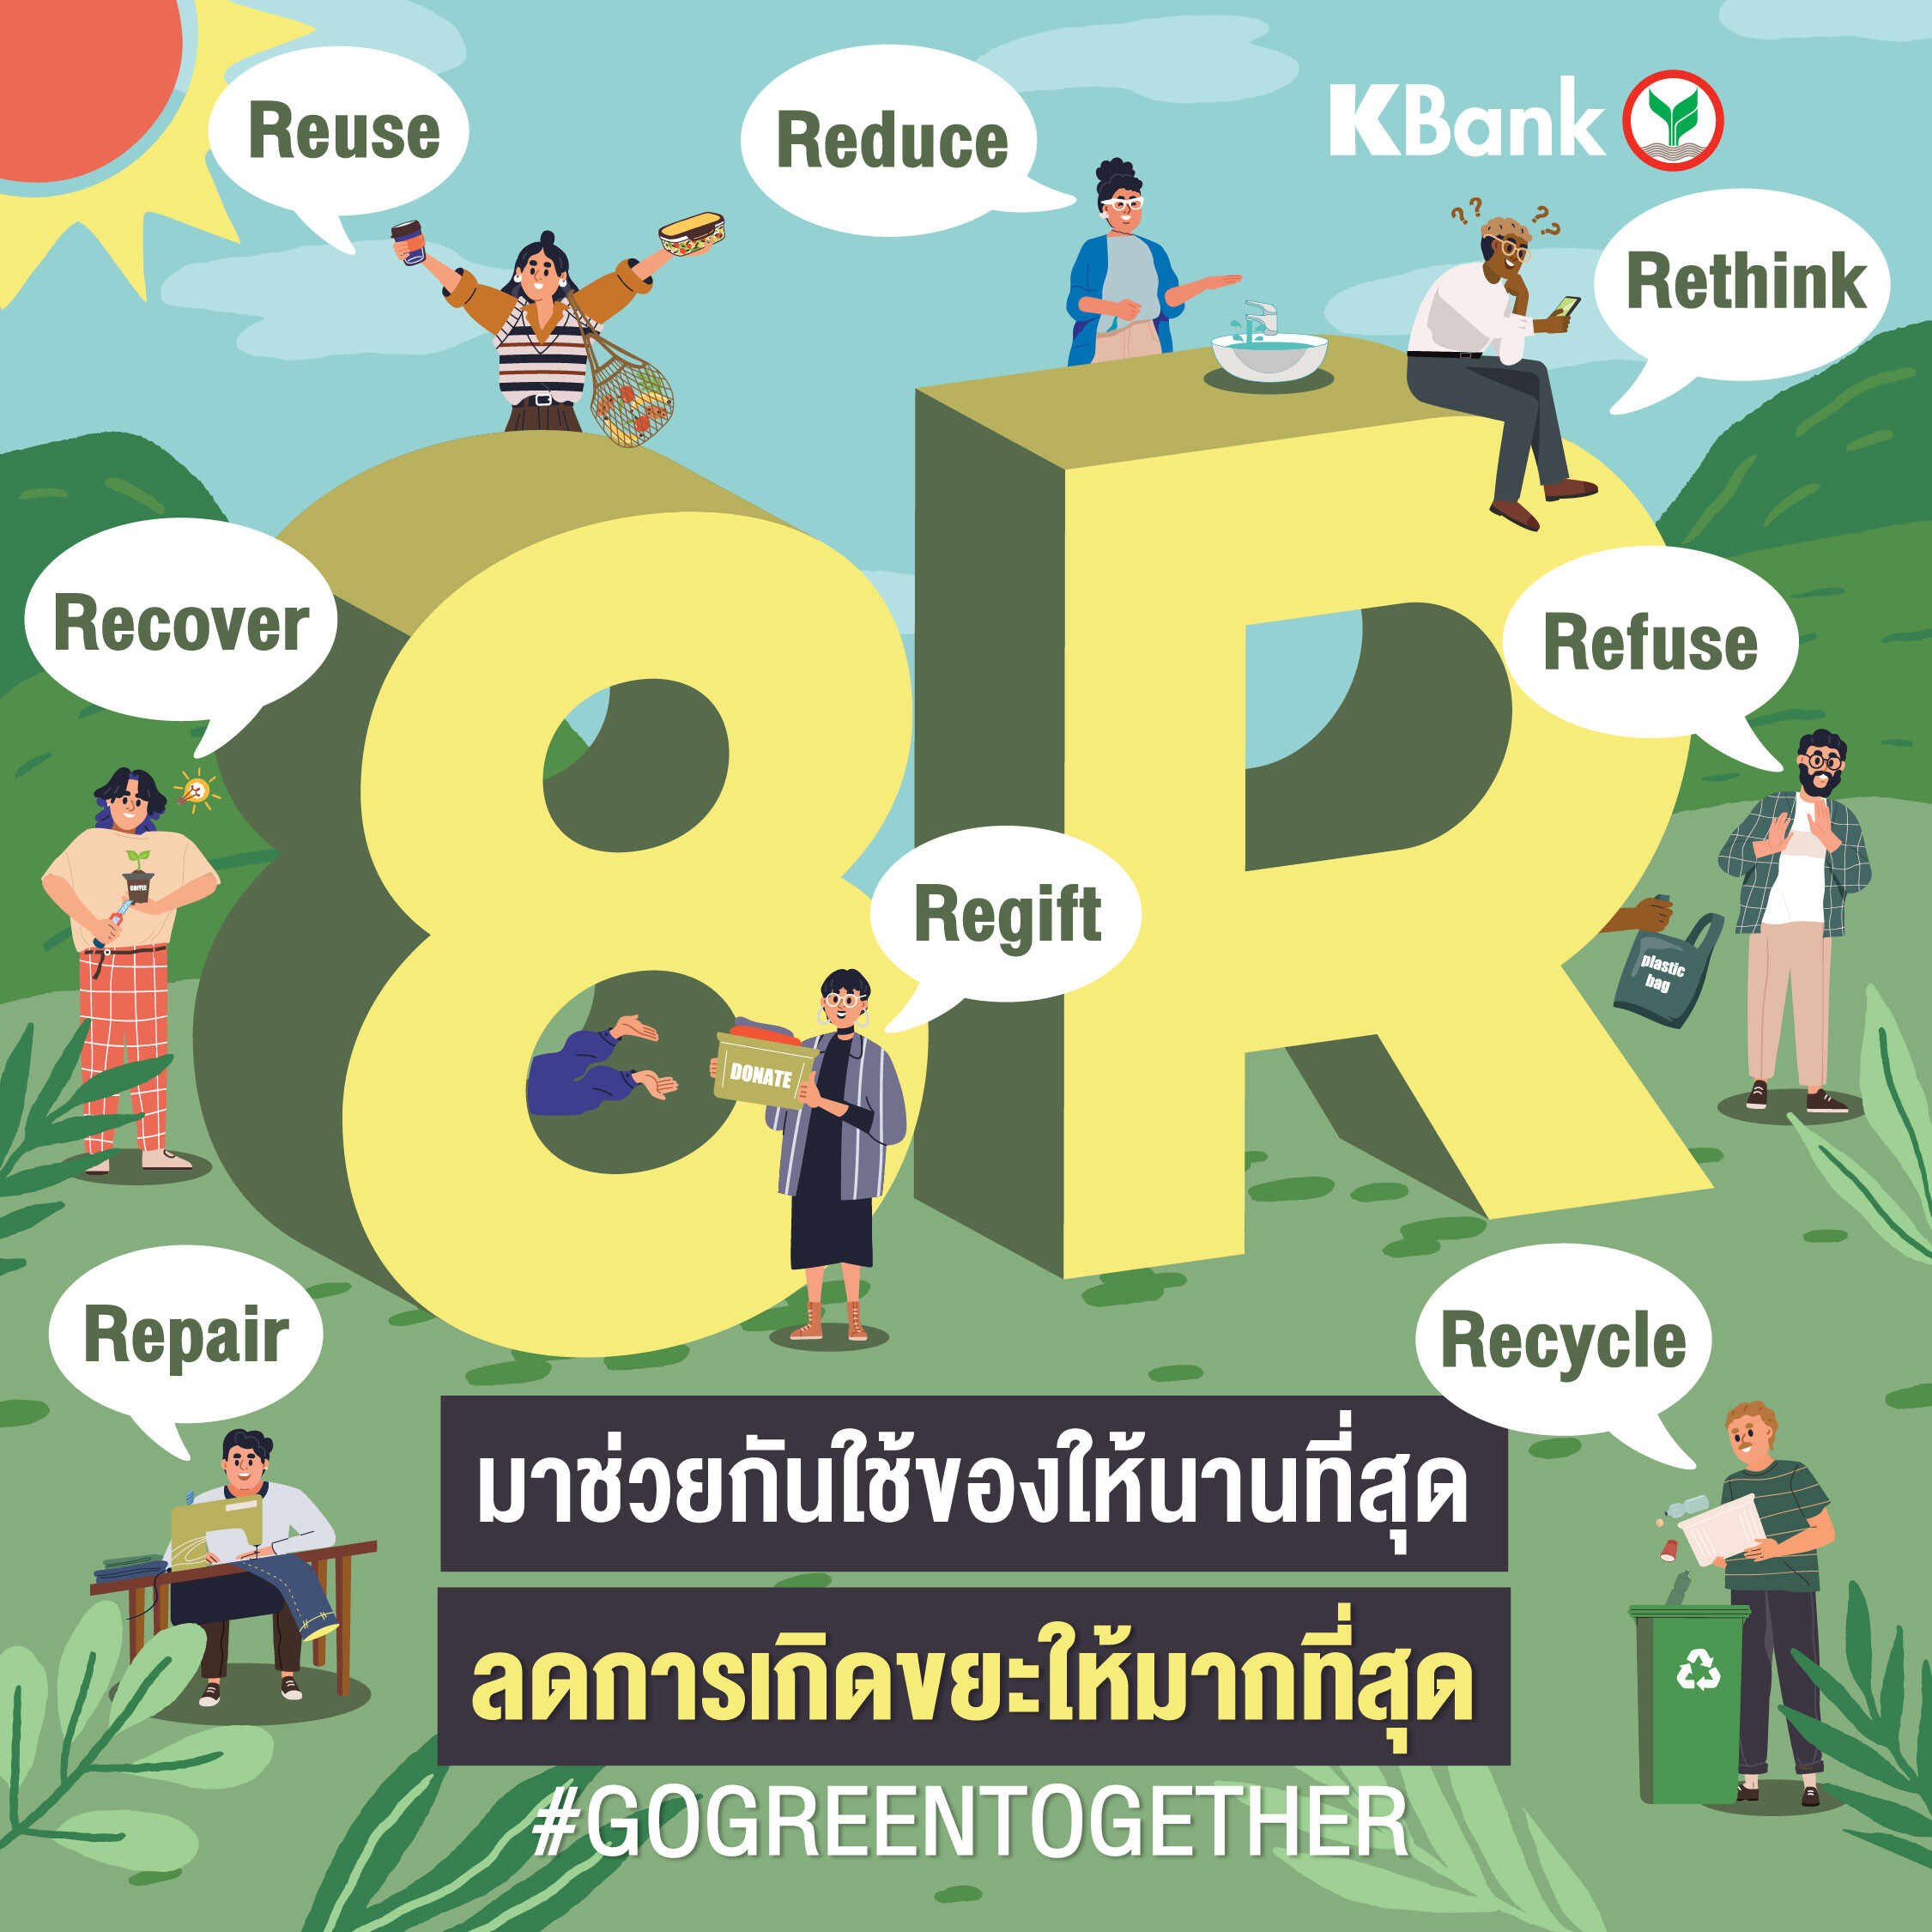 กสิกรไทย ชวนคนไทย "GO GREEN TOGETHER ลดภาวะโลกรวนไปด้วยกัน" 1 คอมเมนต์ไลฟ์สไตล์กรีน เท่ากับ 100 บาท สมทบทุนติดโซลาร์เซลล์ รพ.ถิ่นทุรกันดาร